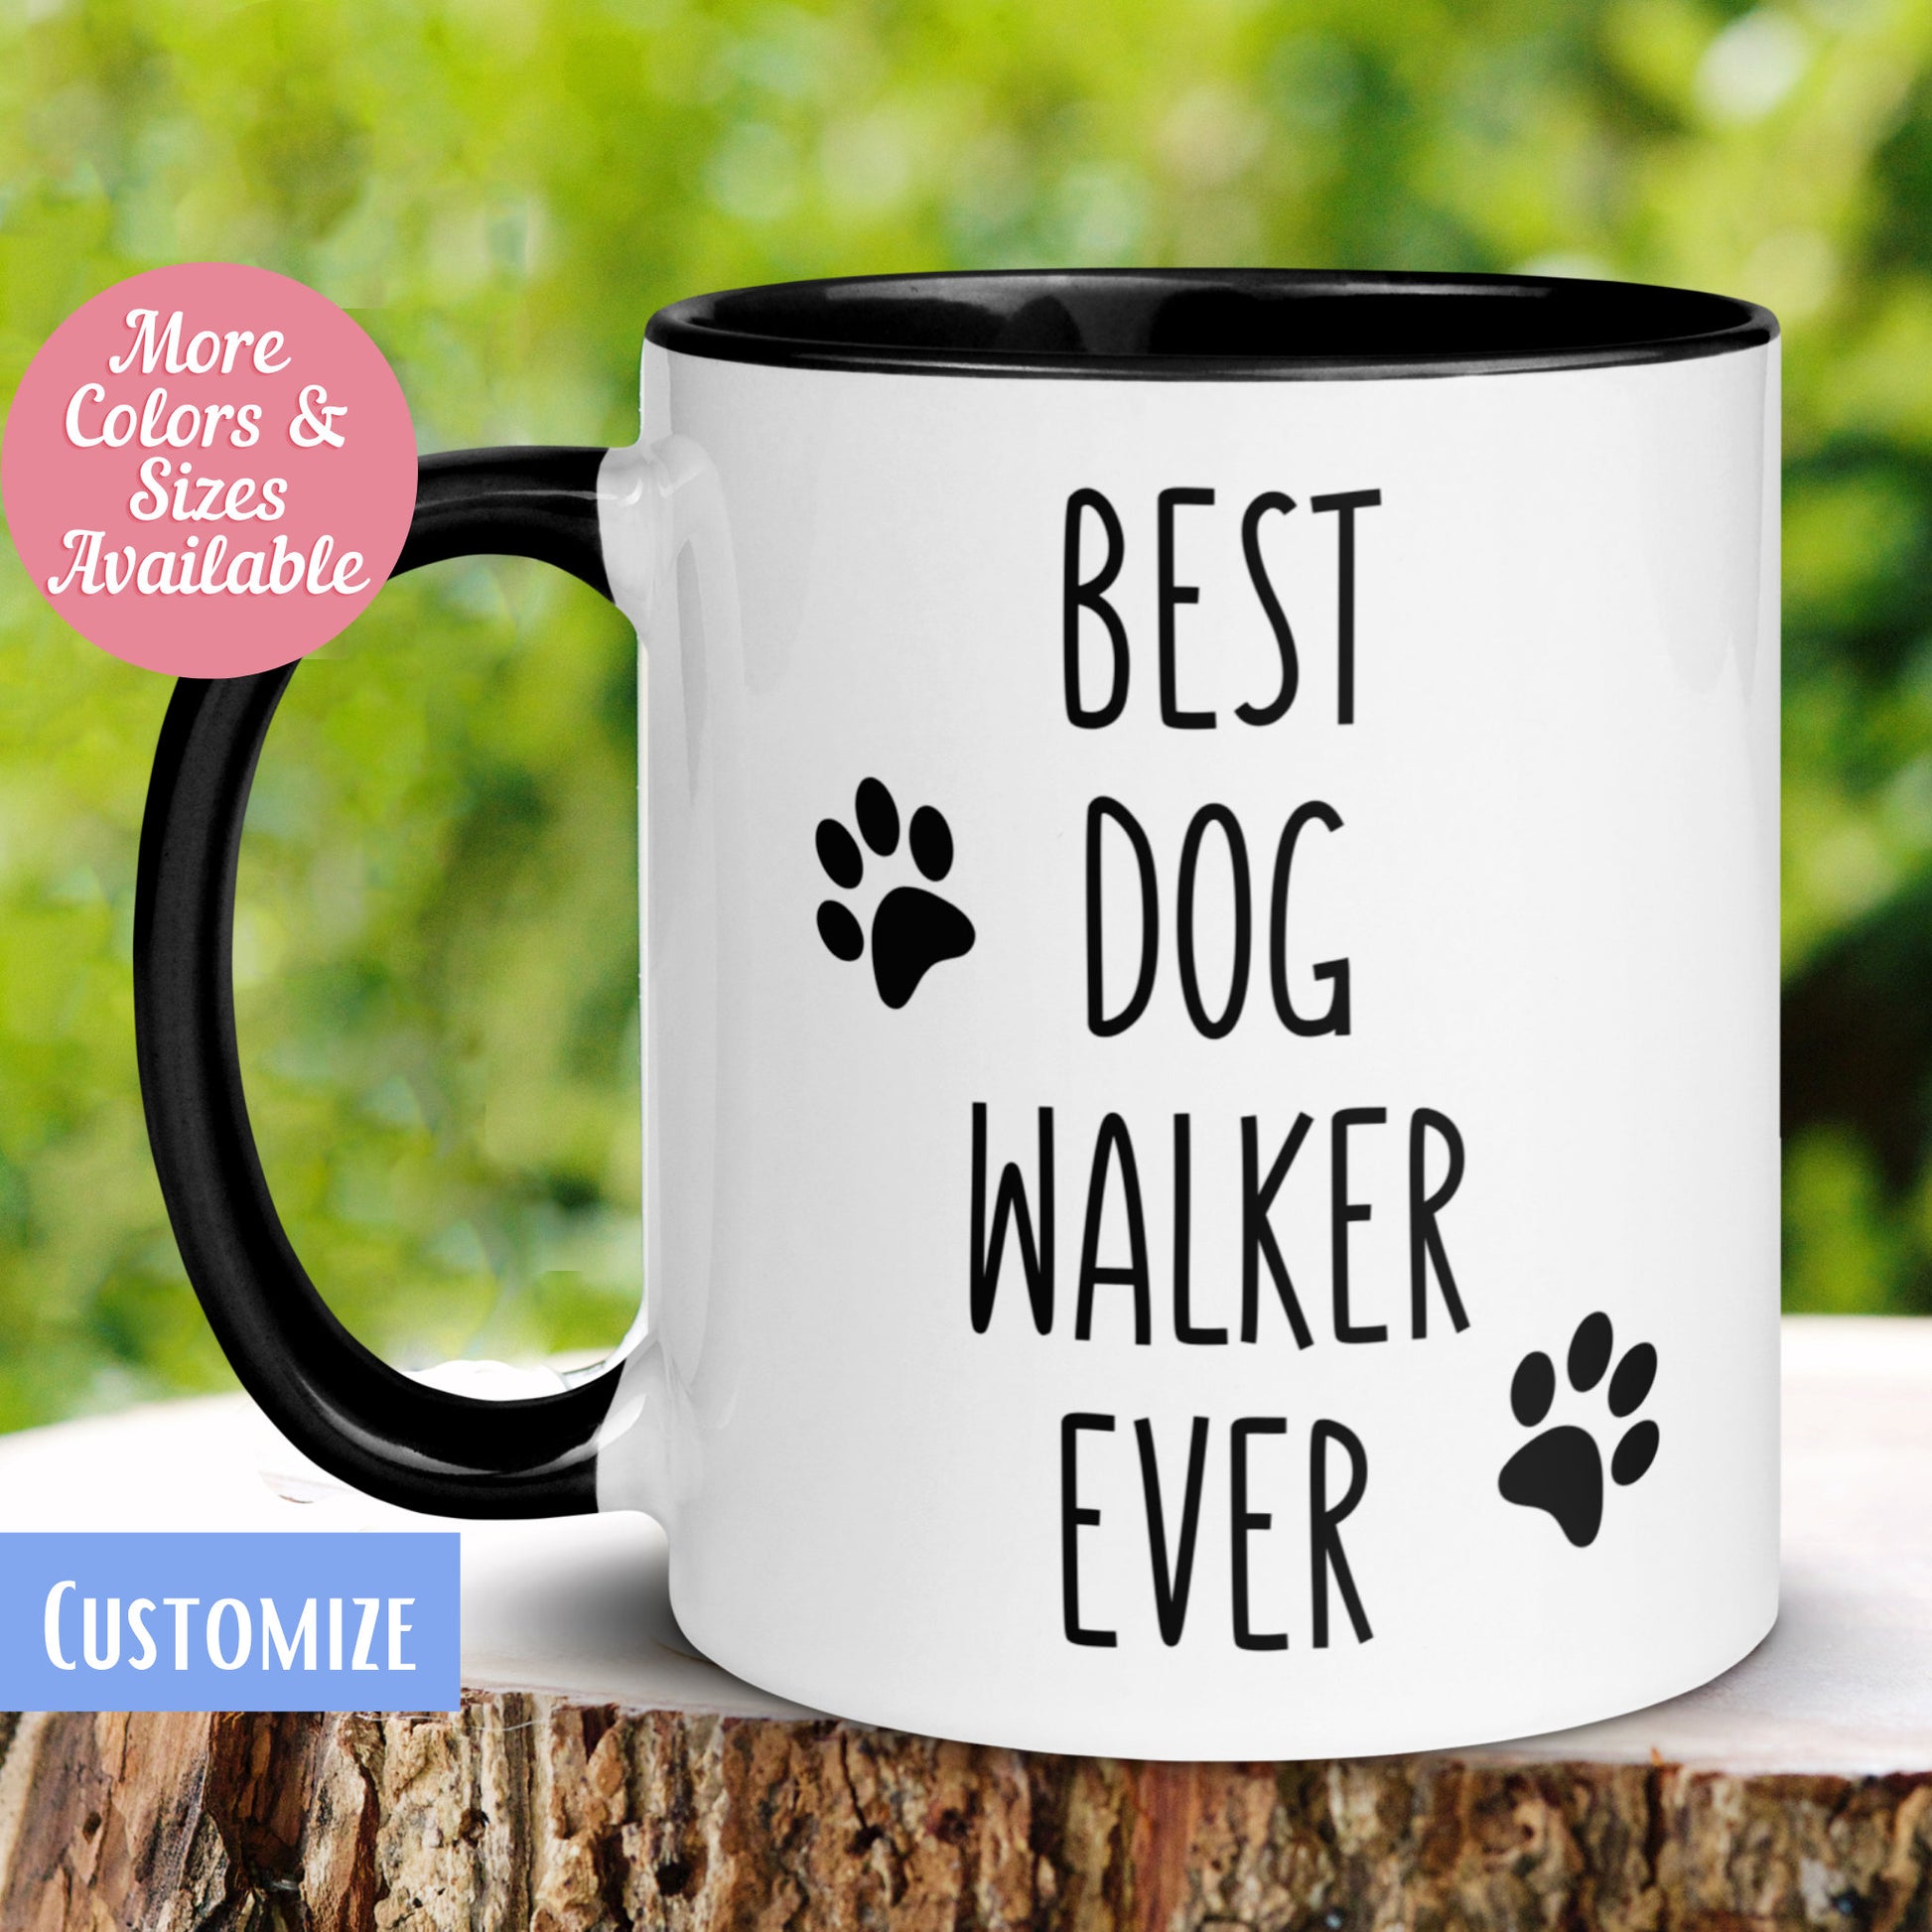 Personalized Dog Walker Mug, Best Dog Walker Mug - Zehnaria - CAREER & EDUCATION - Mugs